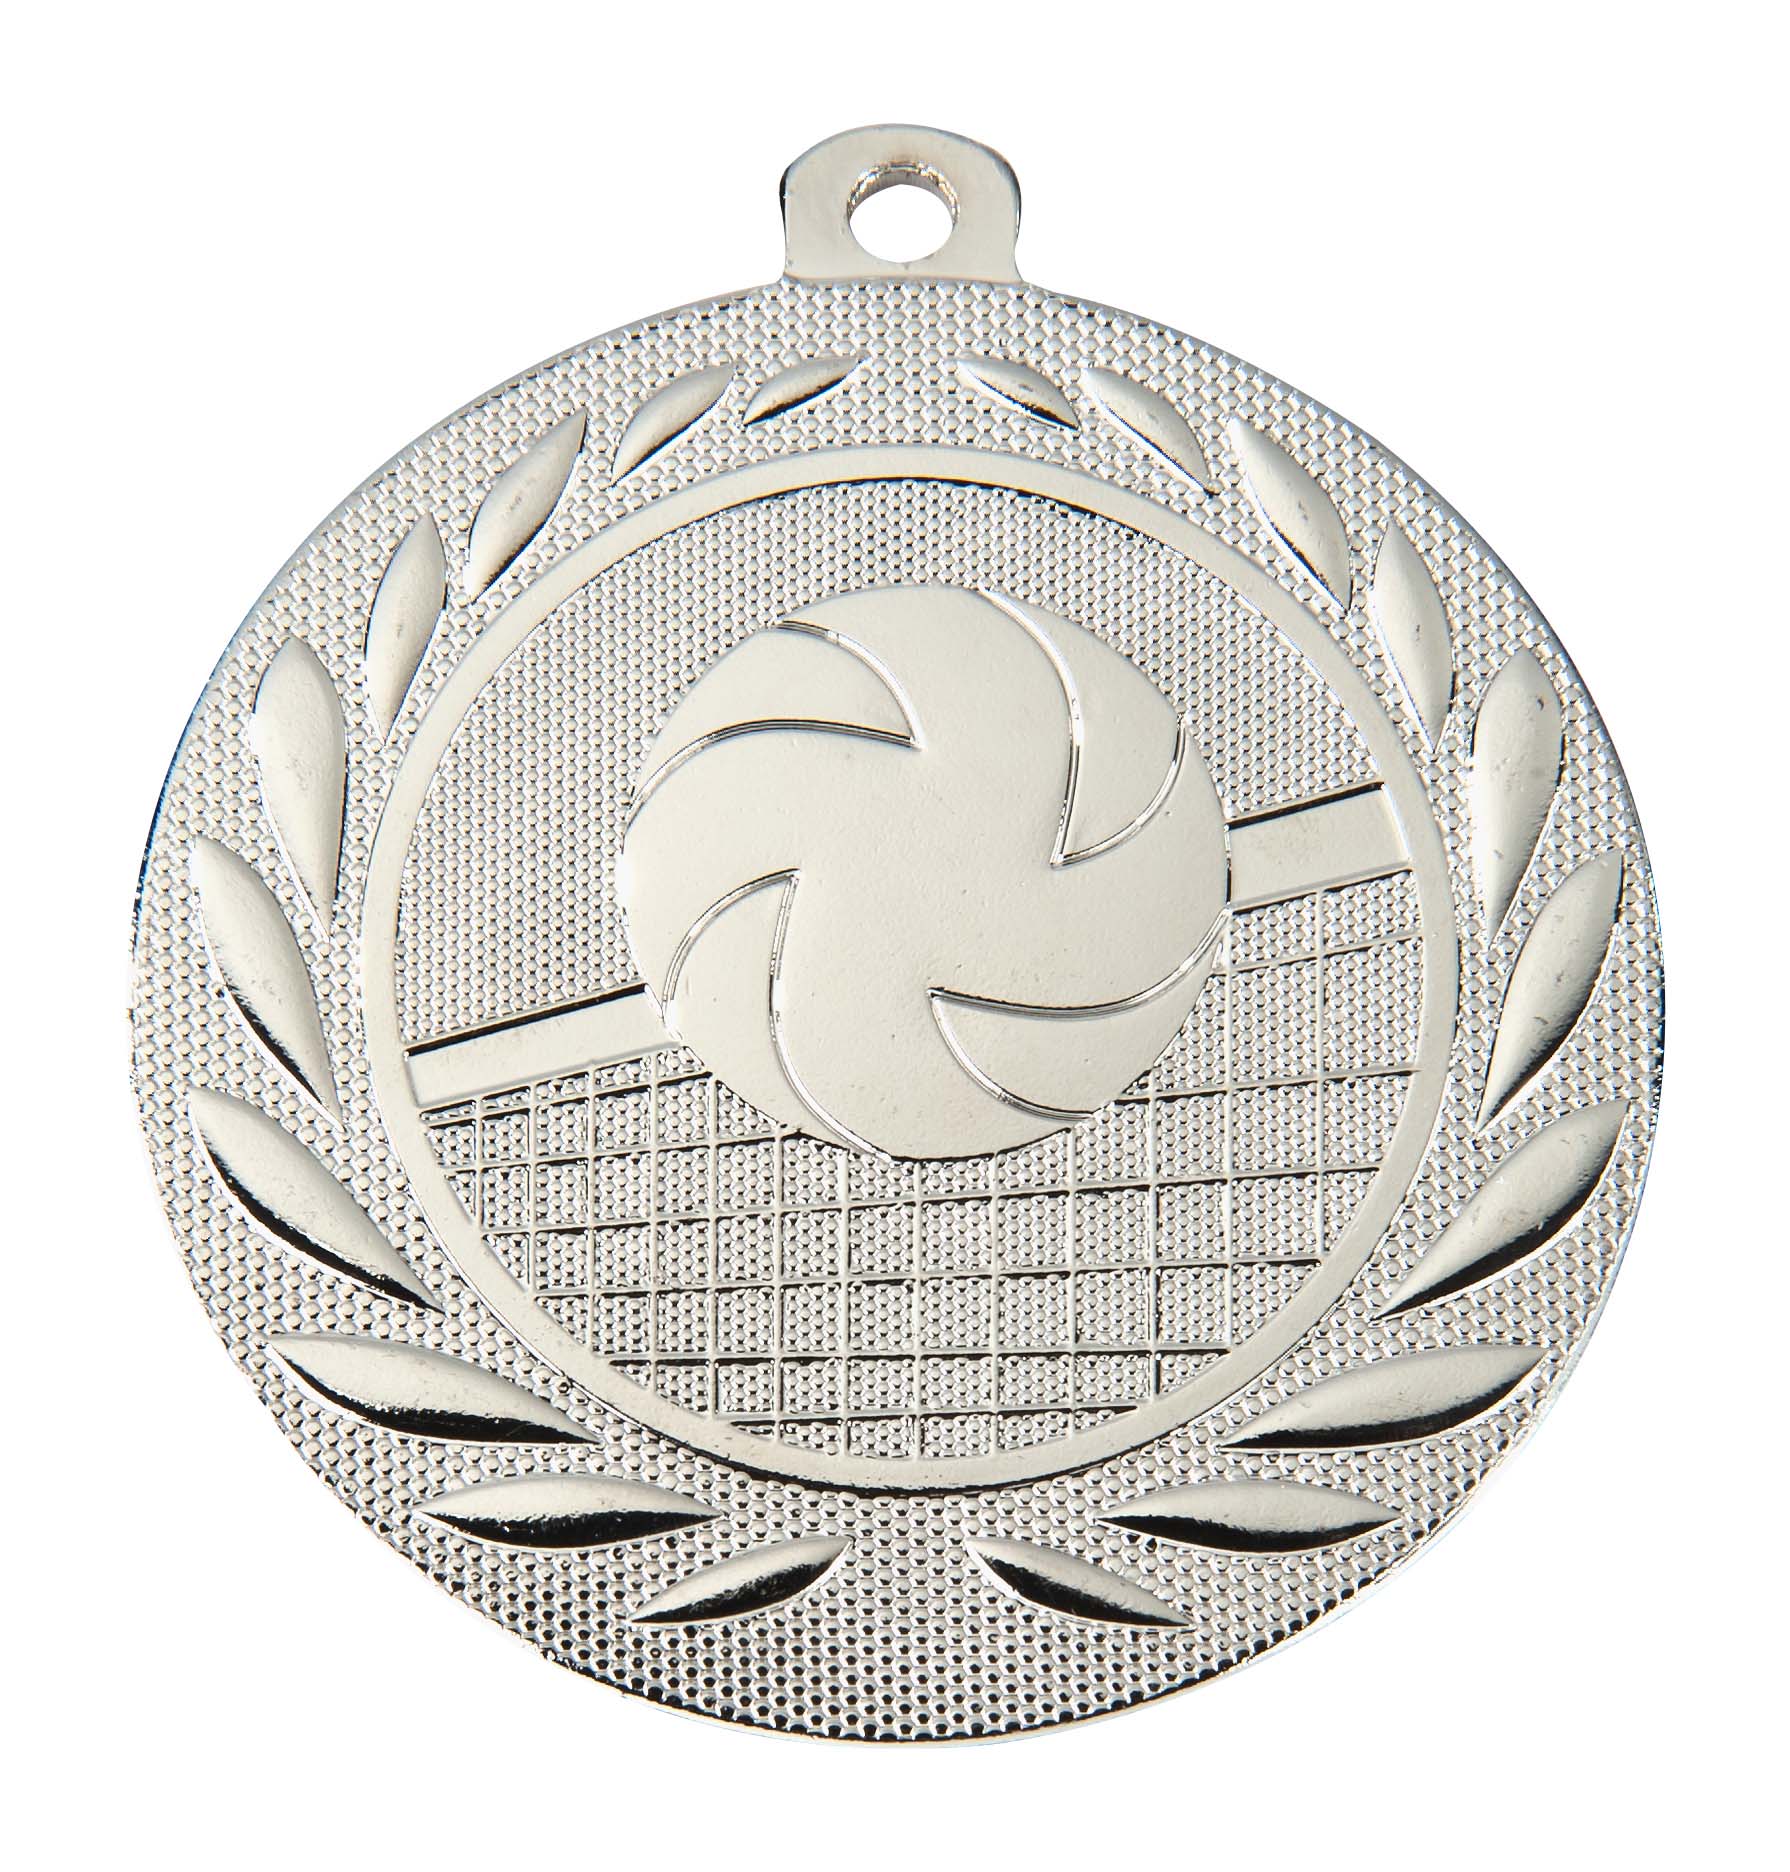 Volleyball-Medaille DI5000N inkl. Band und Beschriftung Silber Fertig montiert gegen Aufpreis